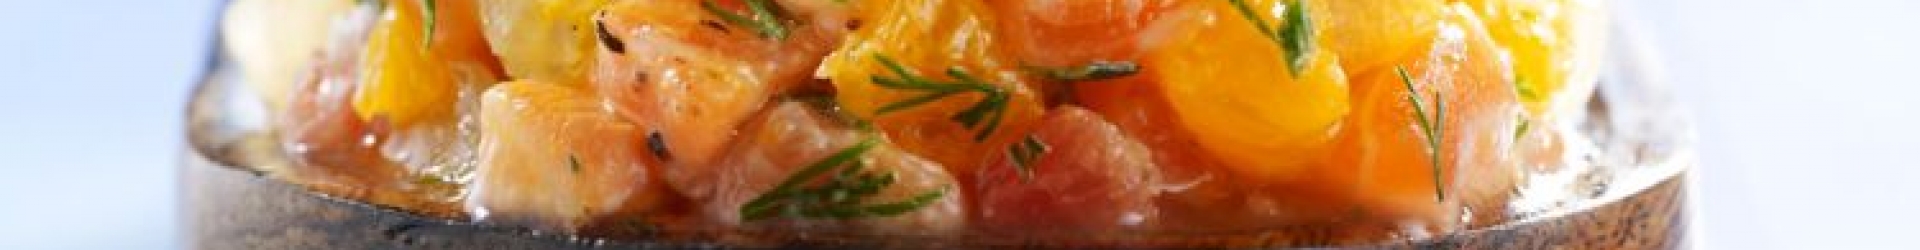 Tartare de saumon aux agrumes et sa mousse 